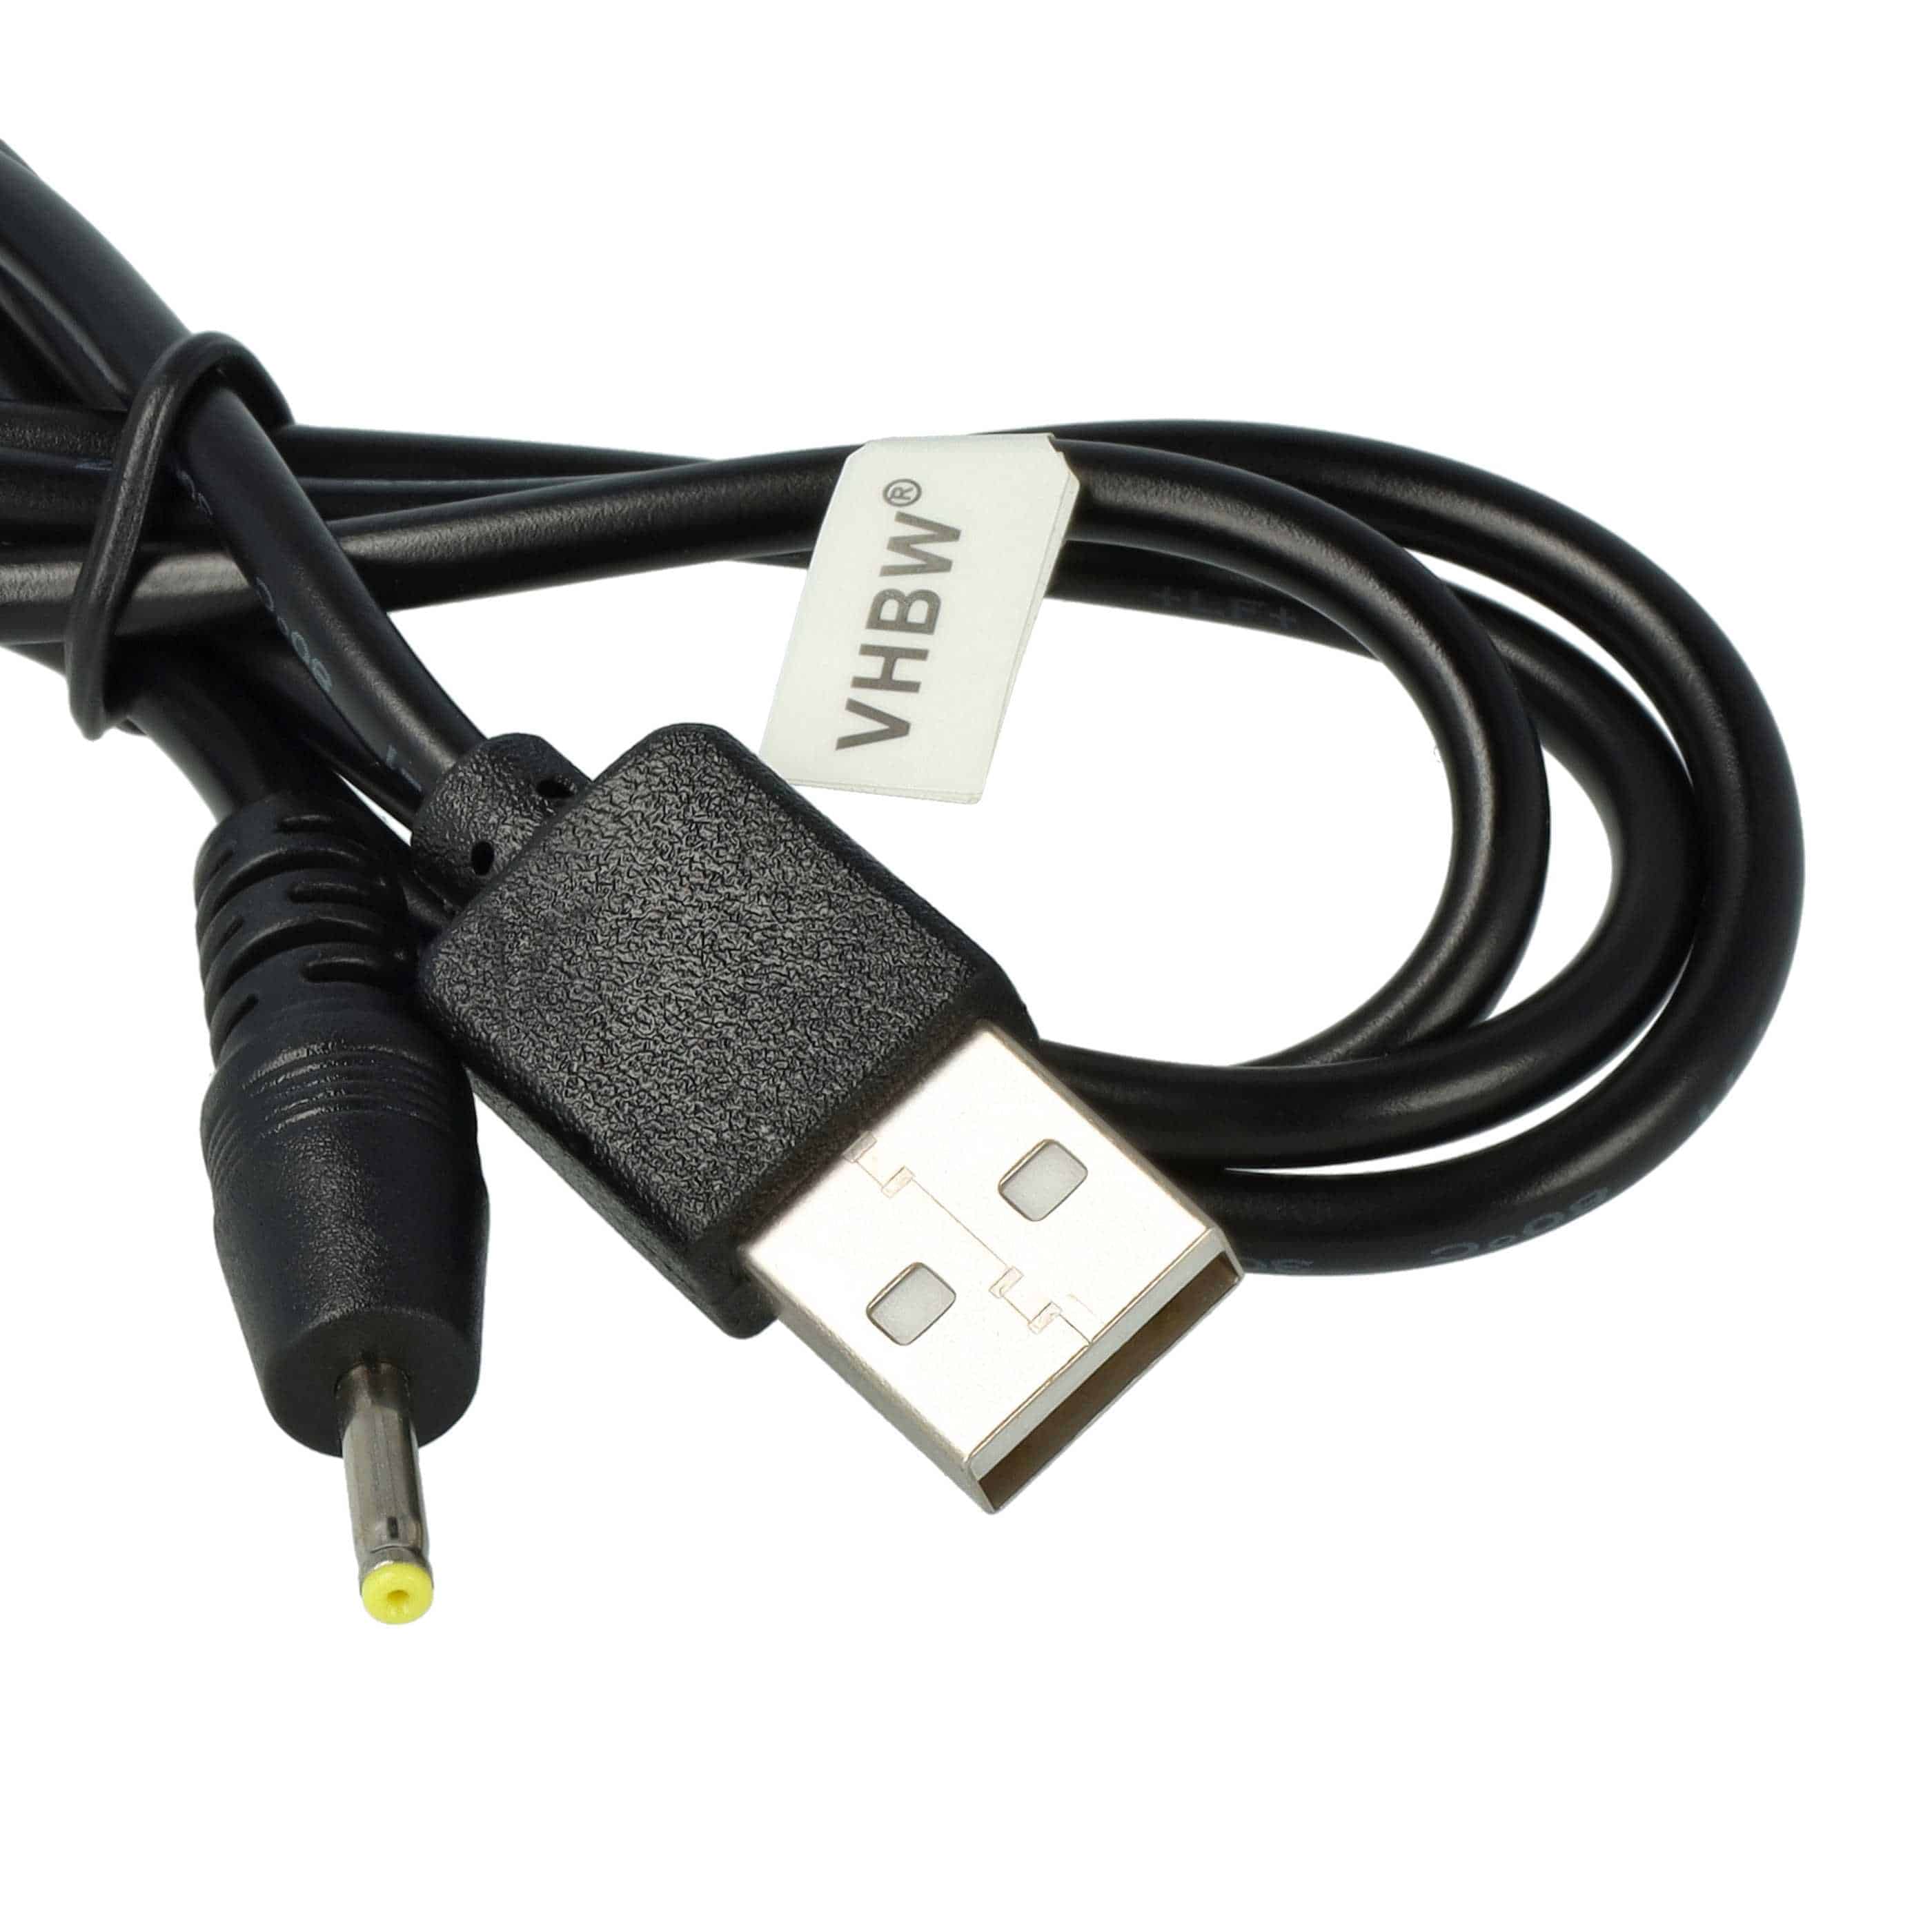 Kabel USB do ładowania drona Starkid 2.4 GHz Niantic II 68007 - 50 cm